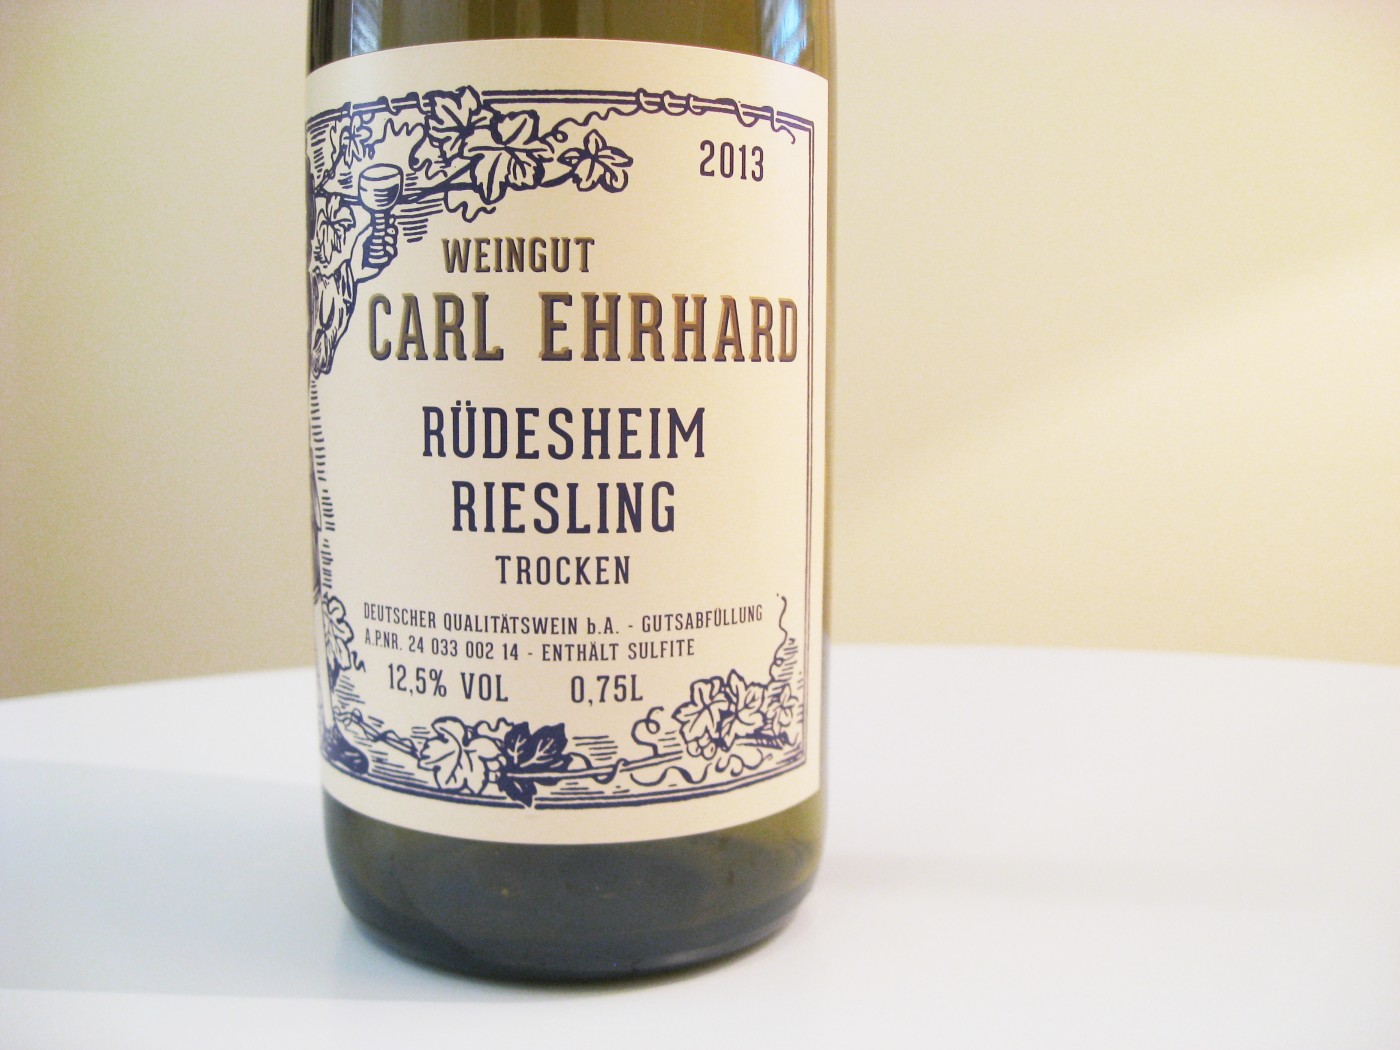 Weingut Carl Ehrhard, Rudesheim Riesling Trocken 2013, Germany, Wine Casual